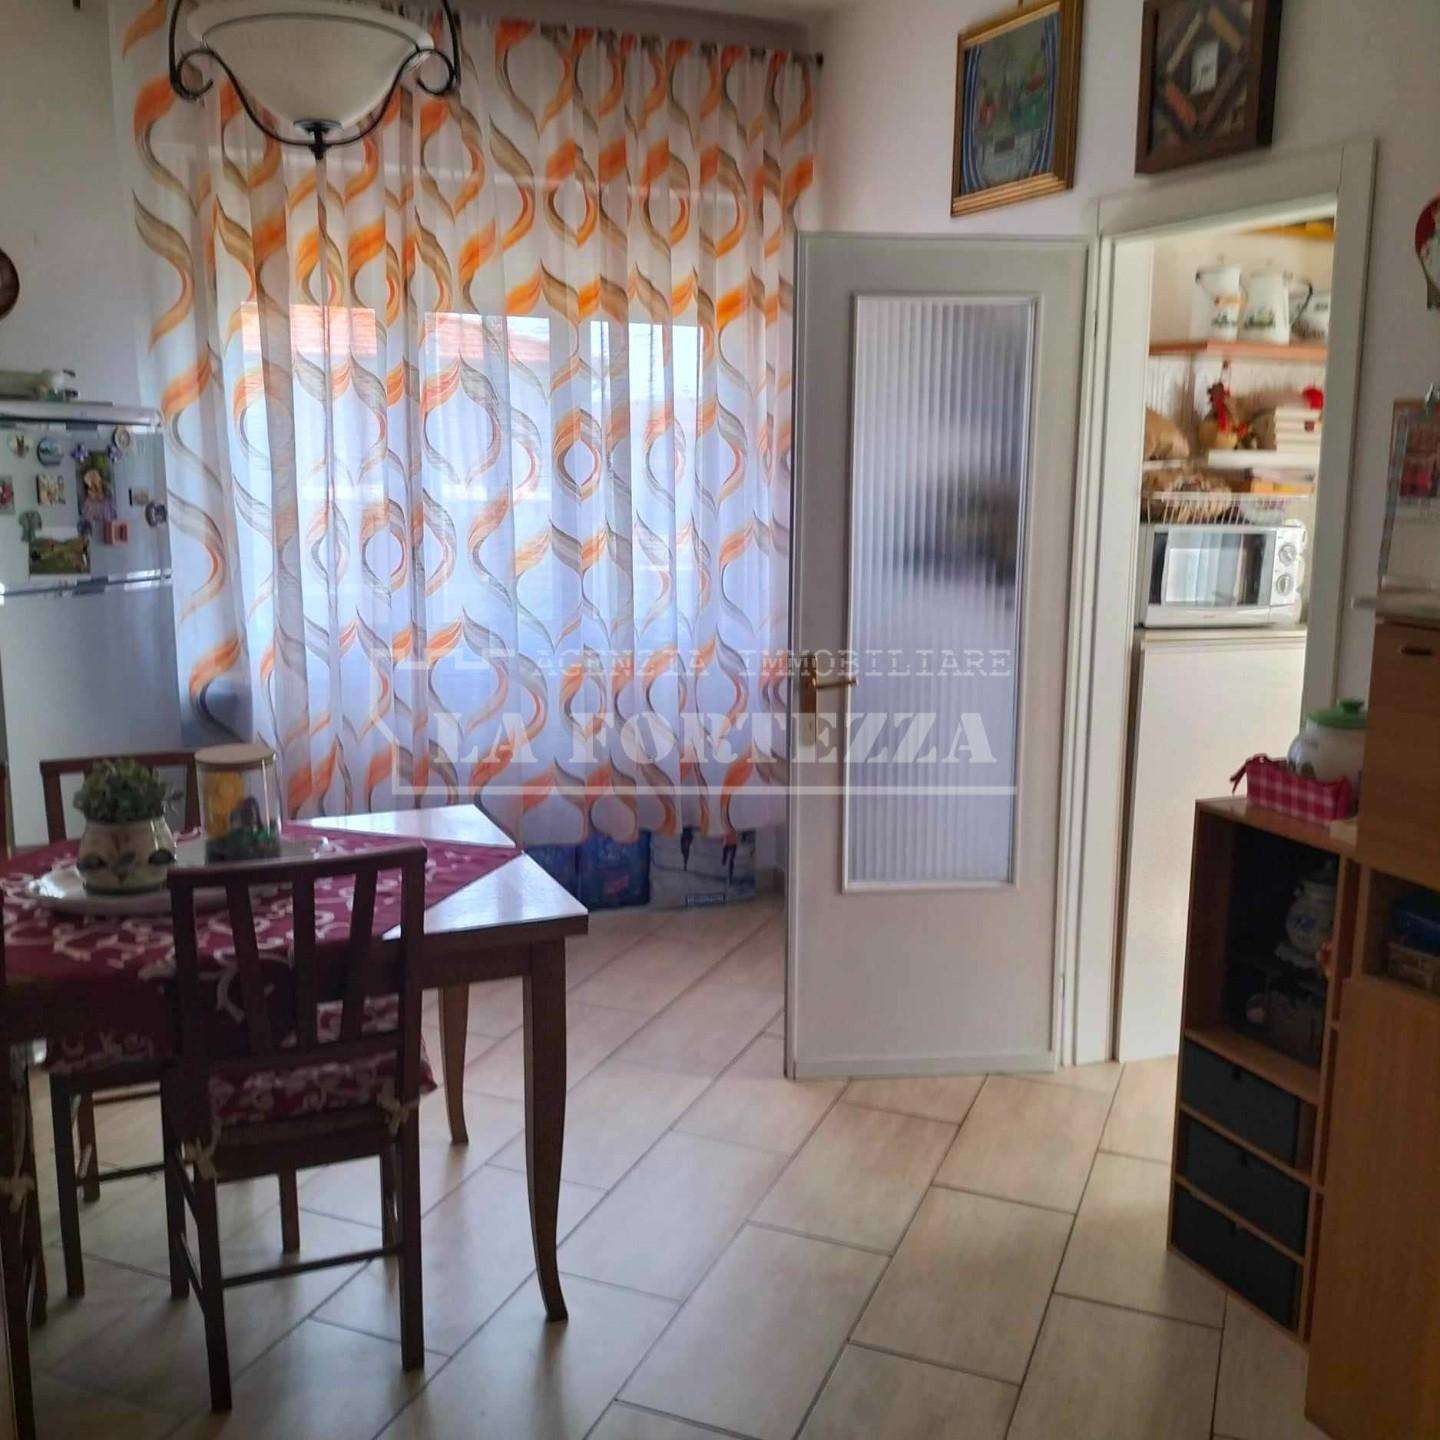 Casa Bi - Trifamiliare in Vendita a San Giuliano Terme Via G. Serrati Madonna dell 'Acqua, 39